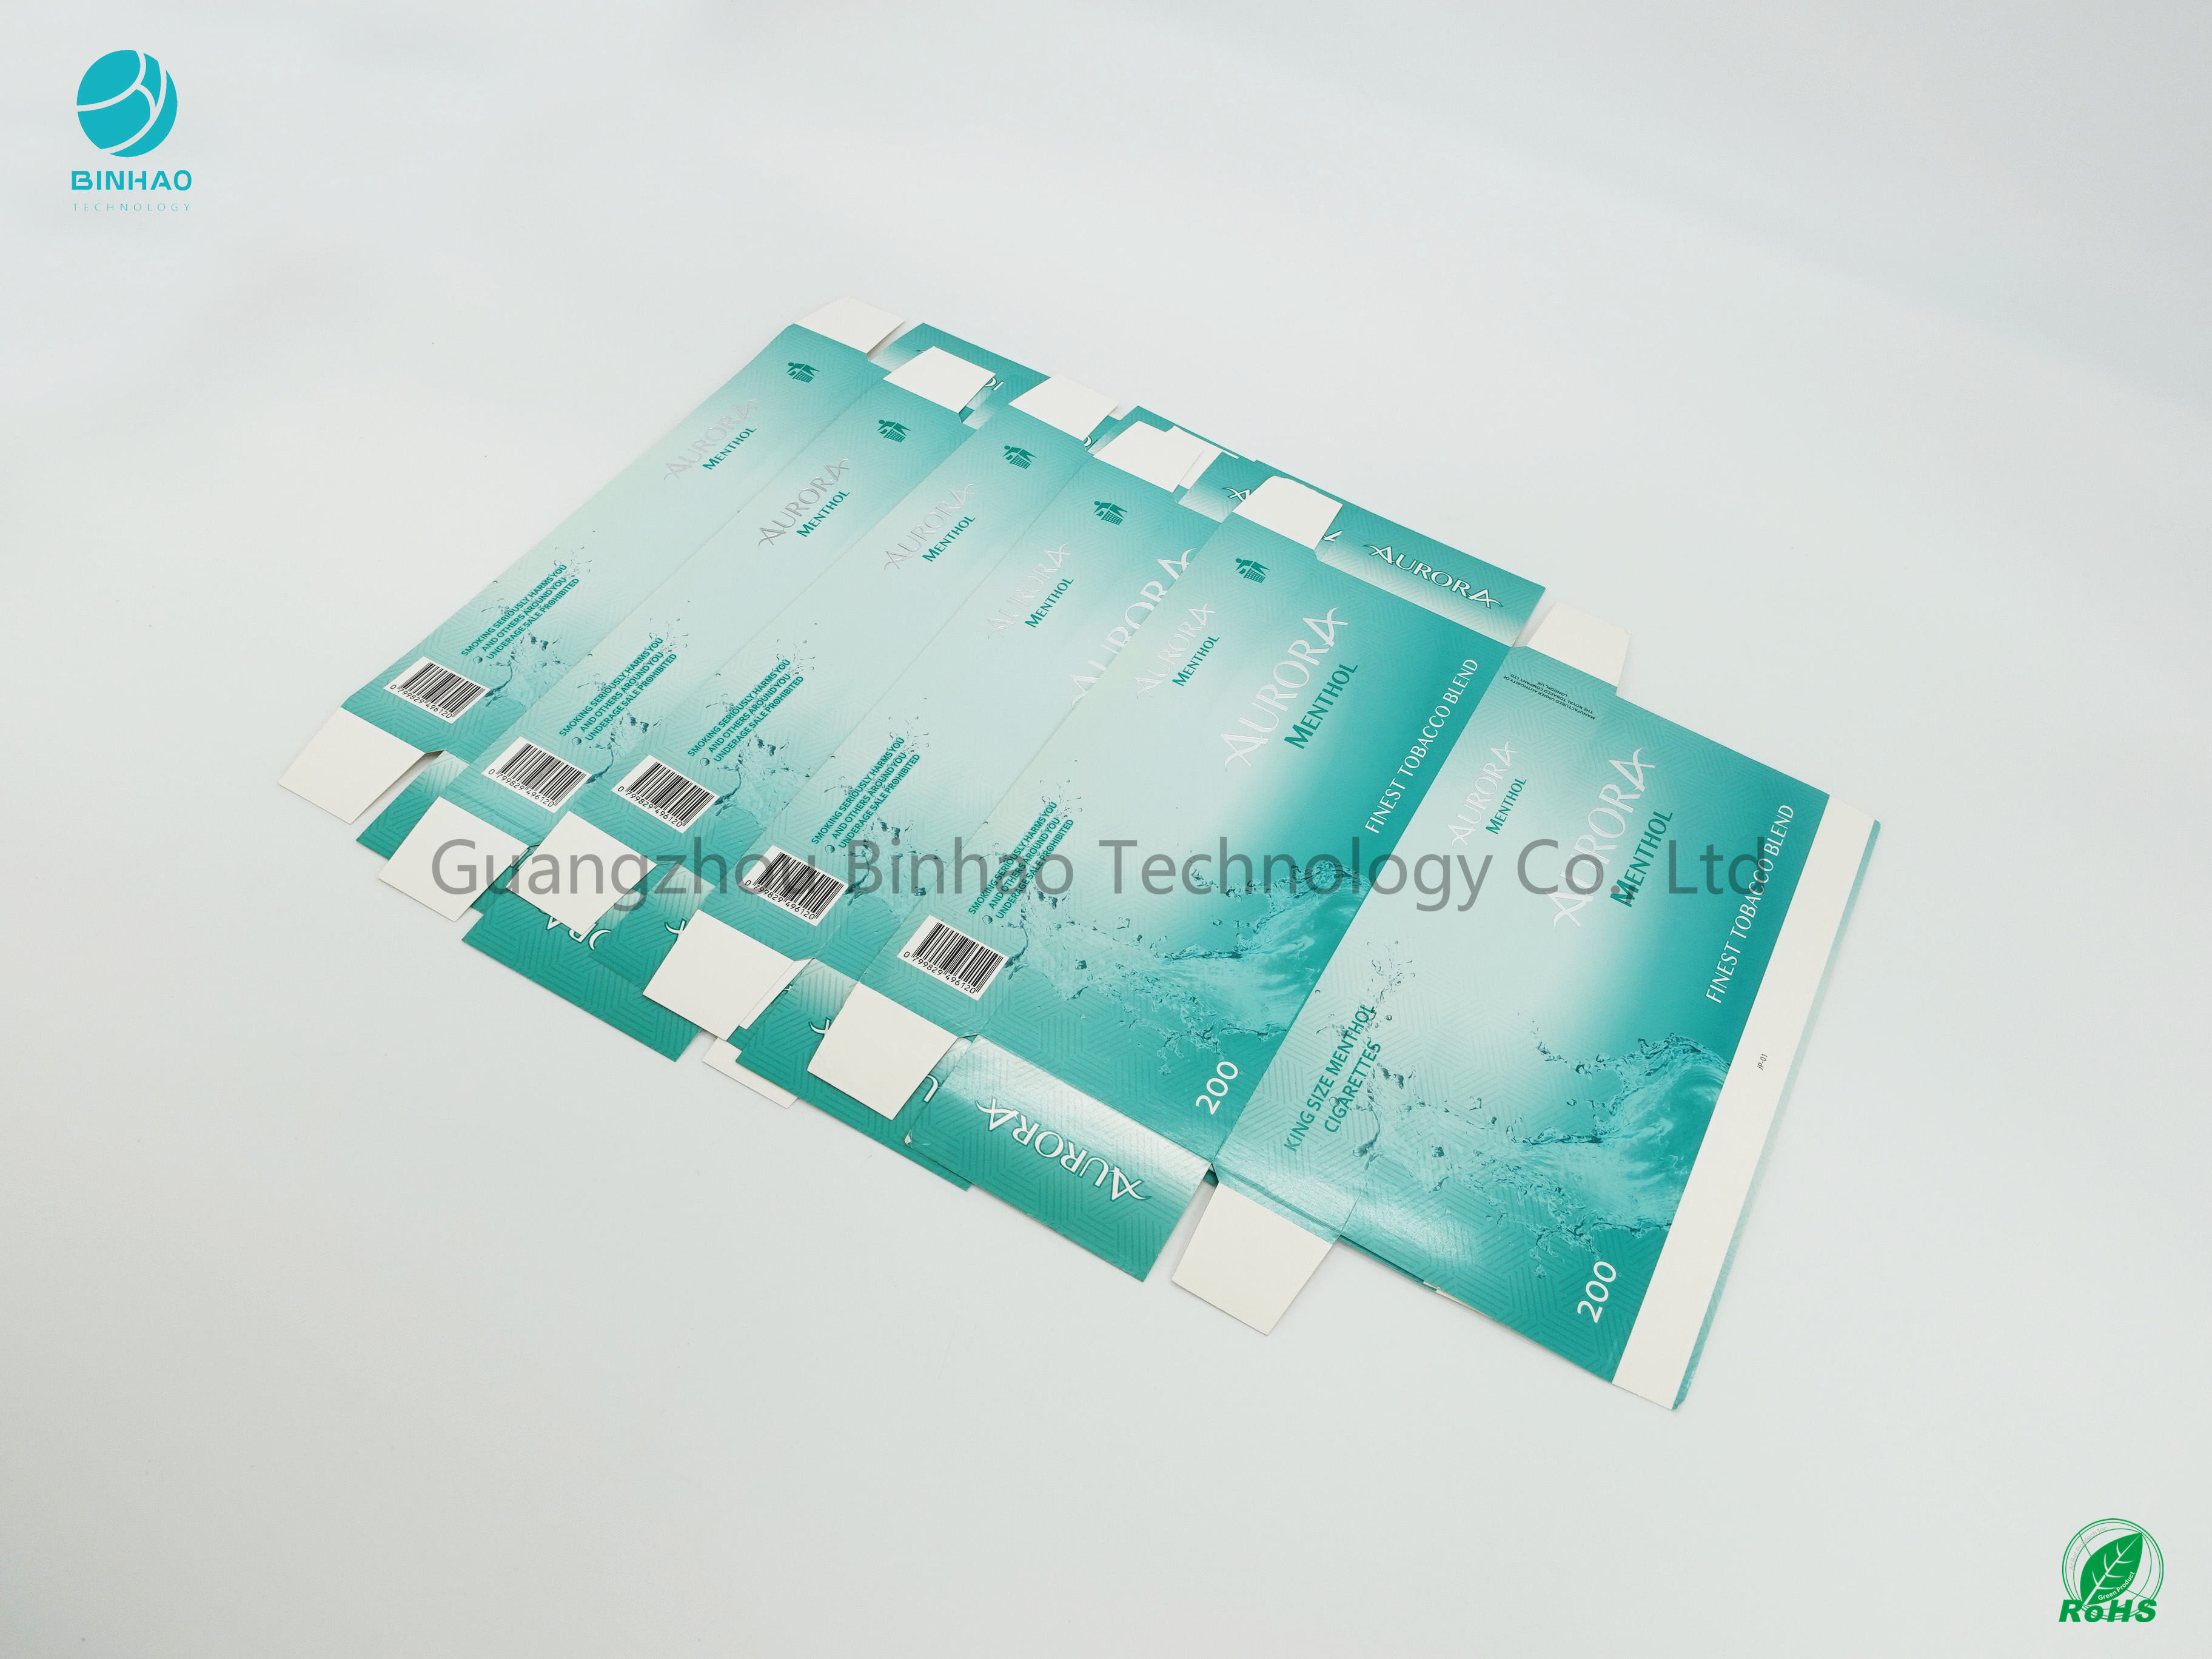 Paperboard лоска 75% печати Шелк-экрана случаев сигареты картона поверхностный определяя размер белый